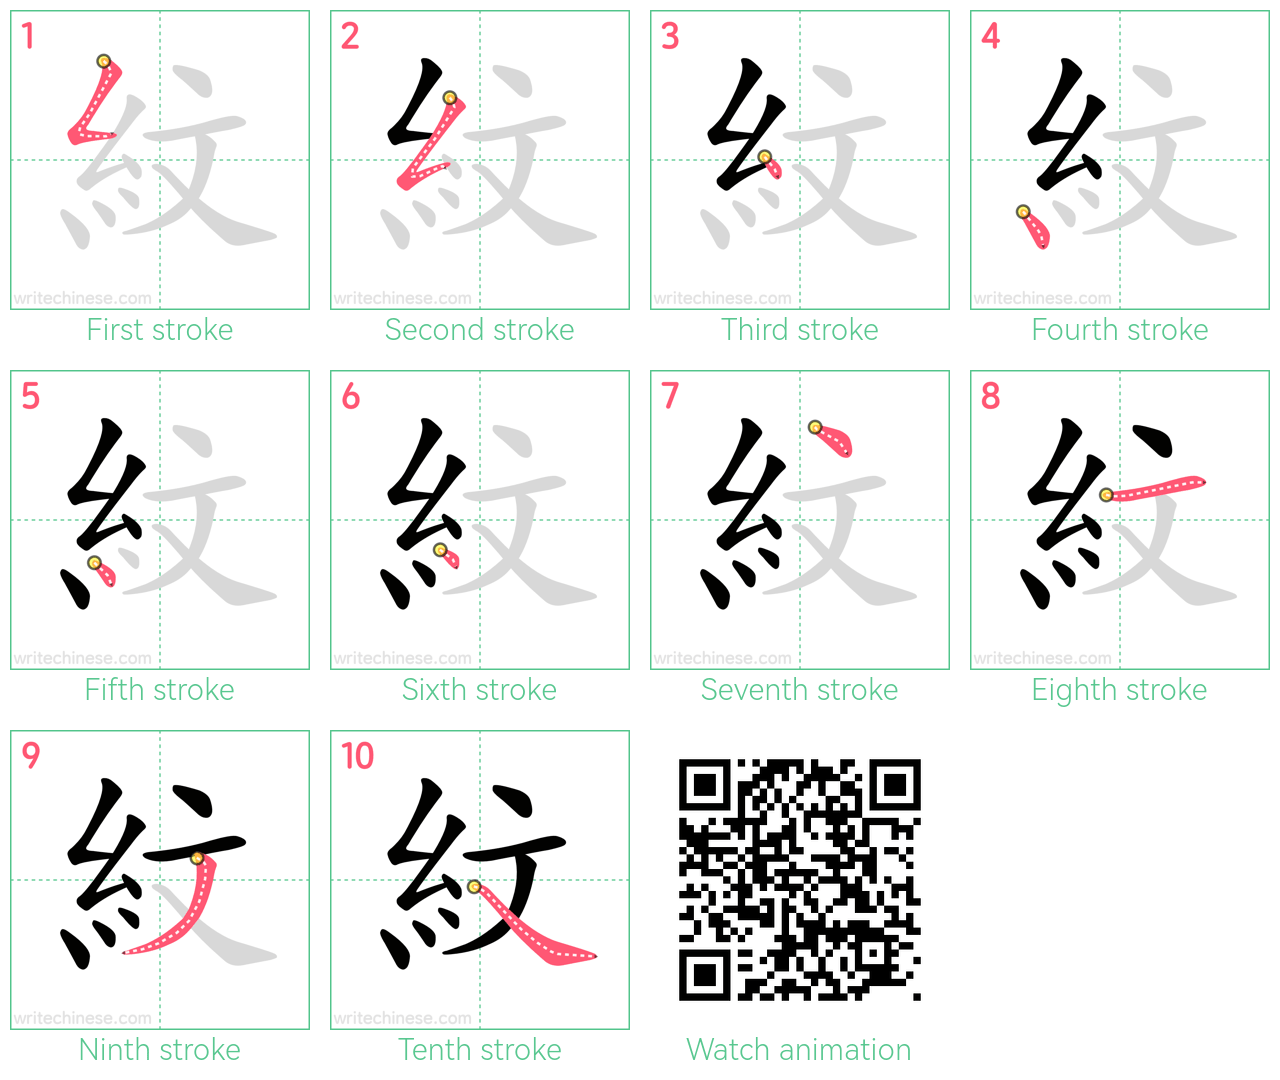 紋 step-by-step stroke order diagrams